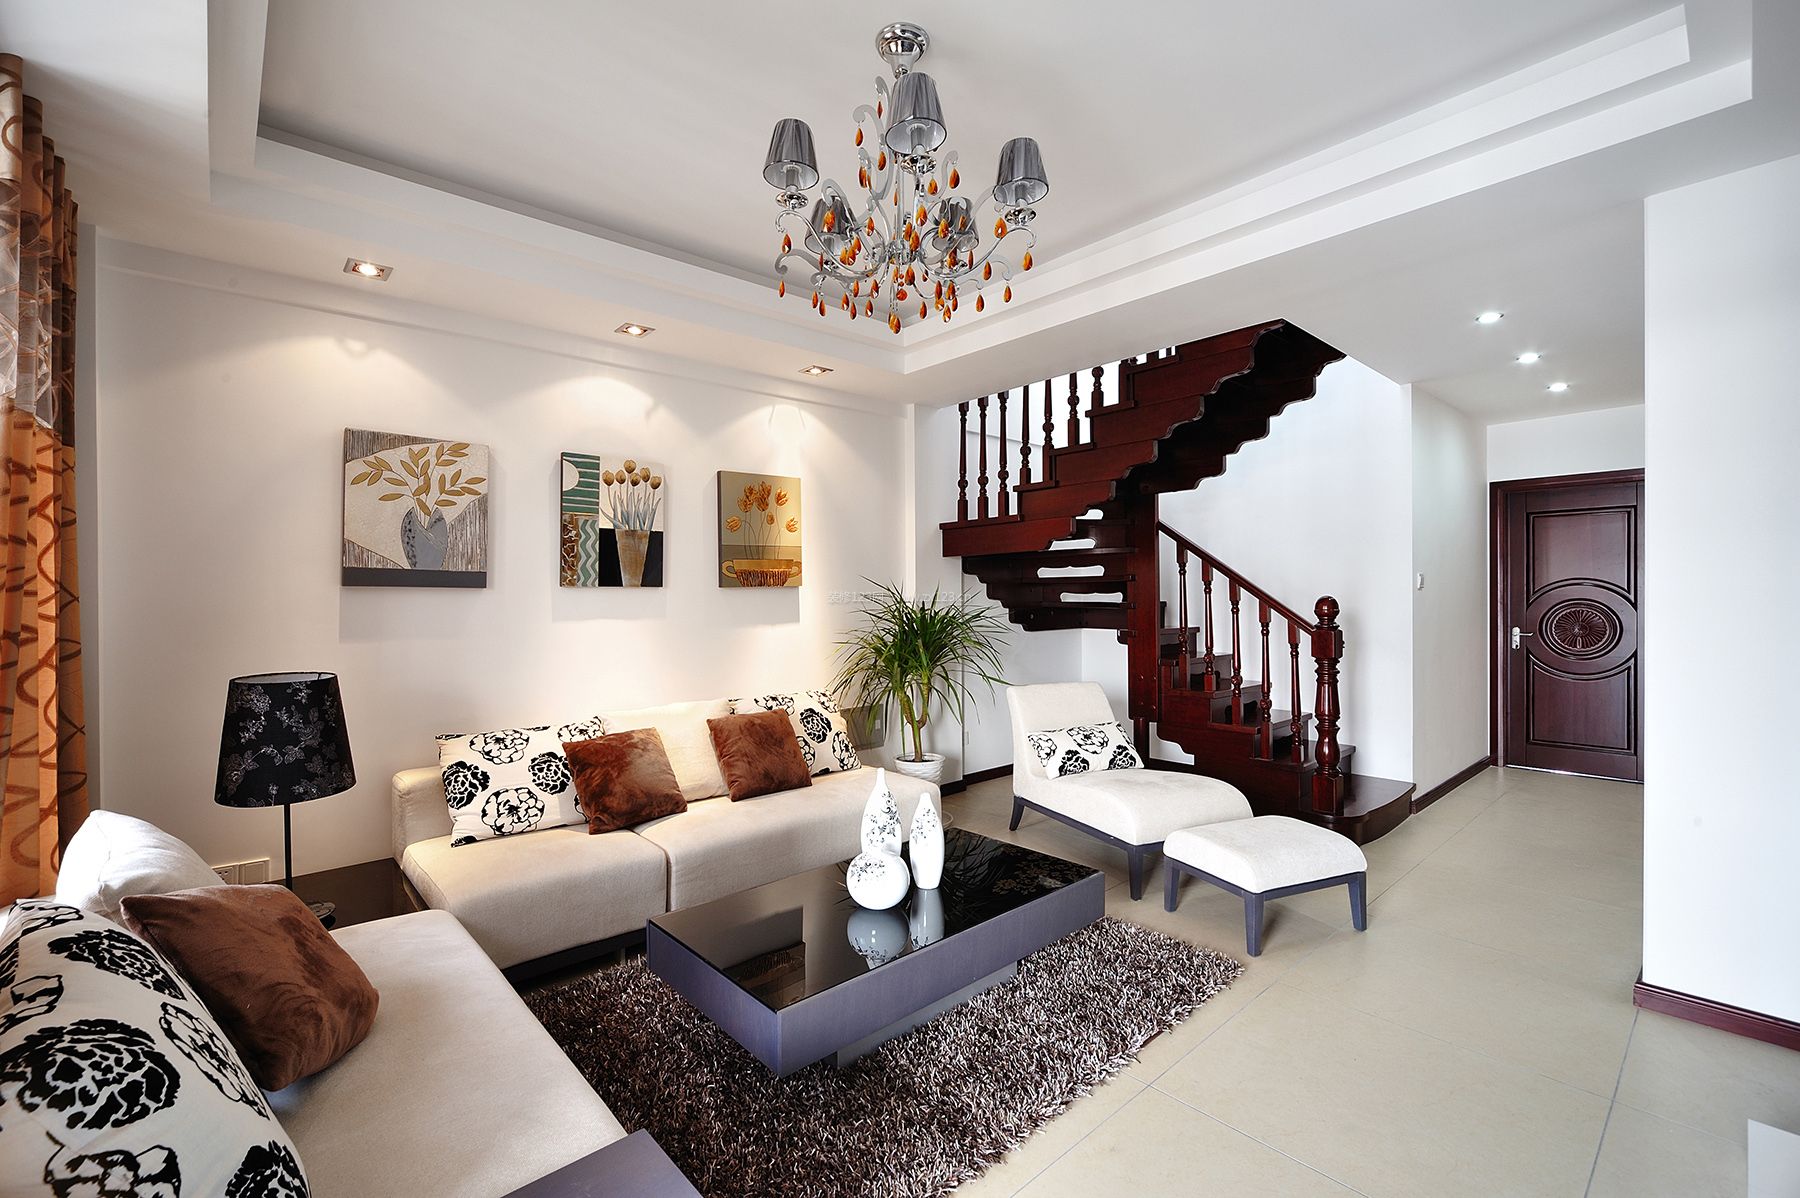 现代小复式家庭客厅楼梯踏步装修效果图